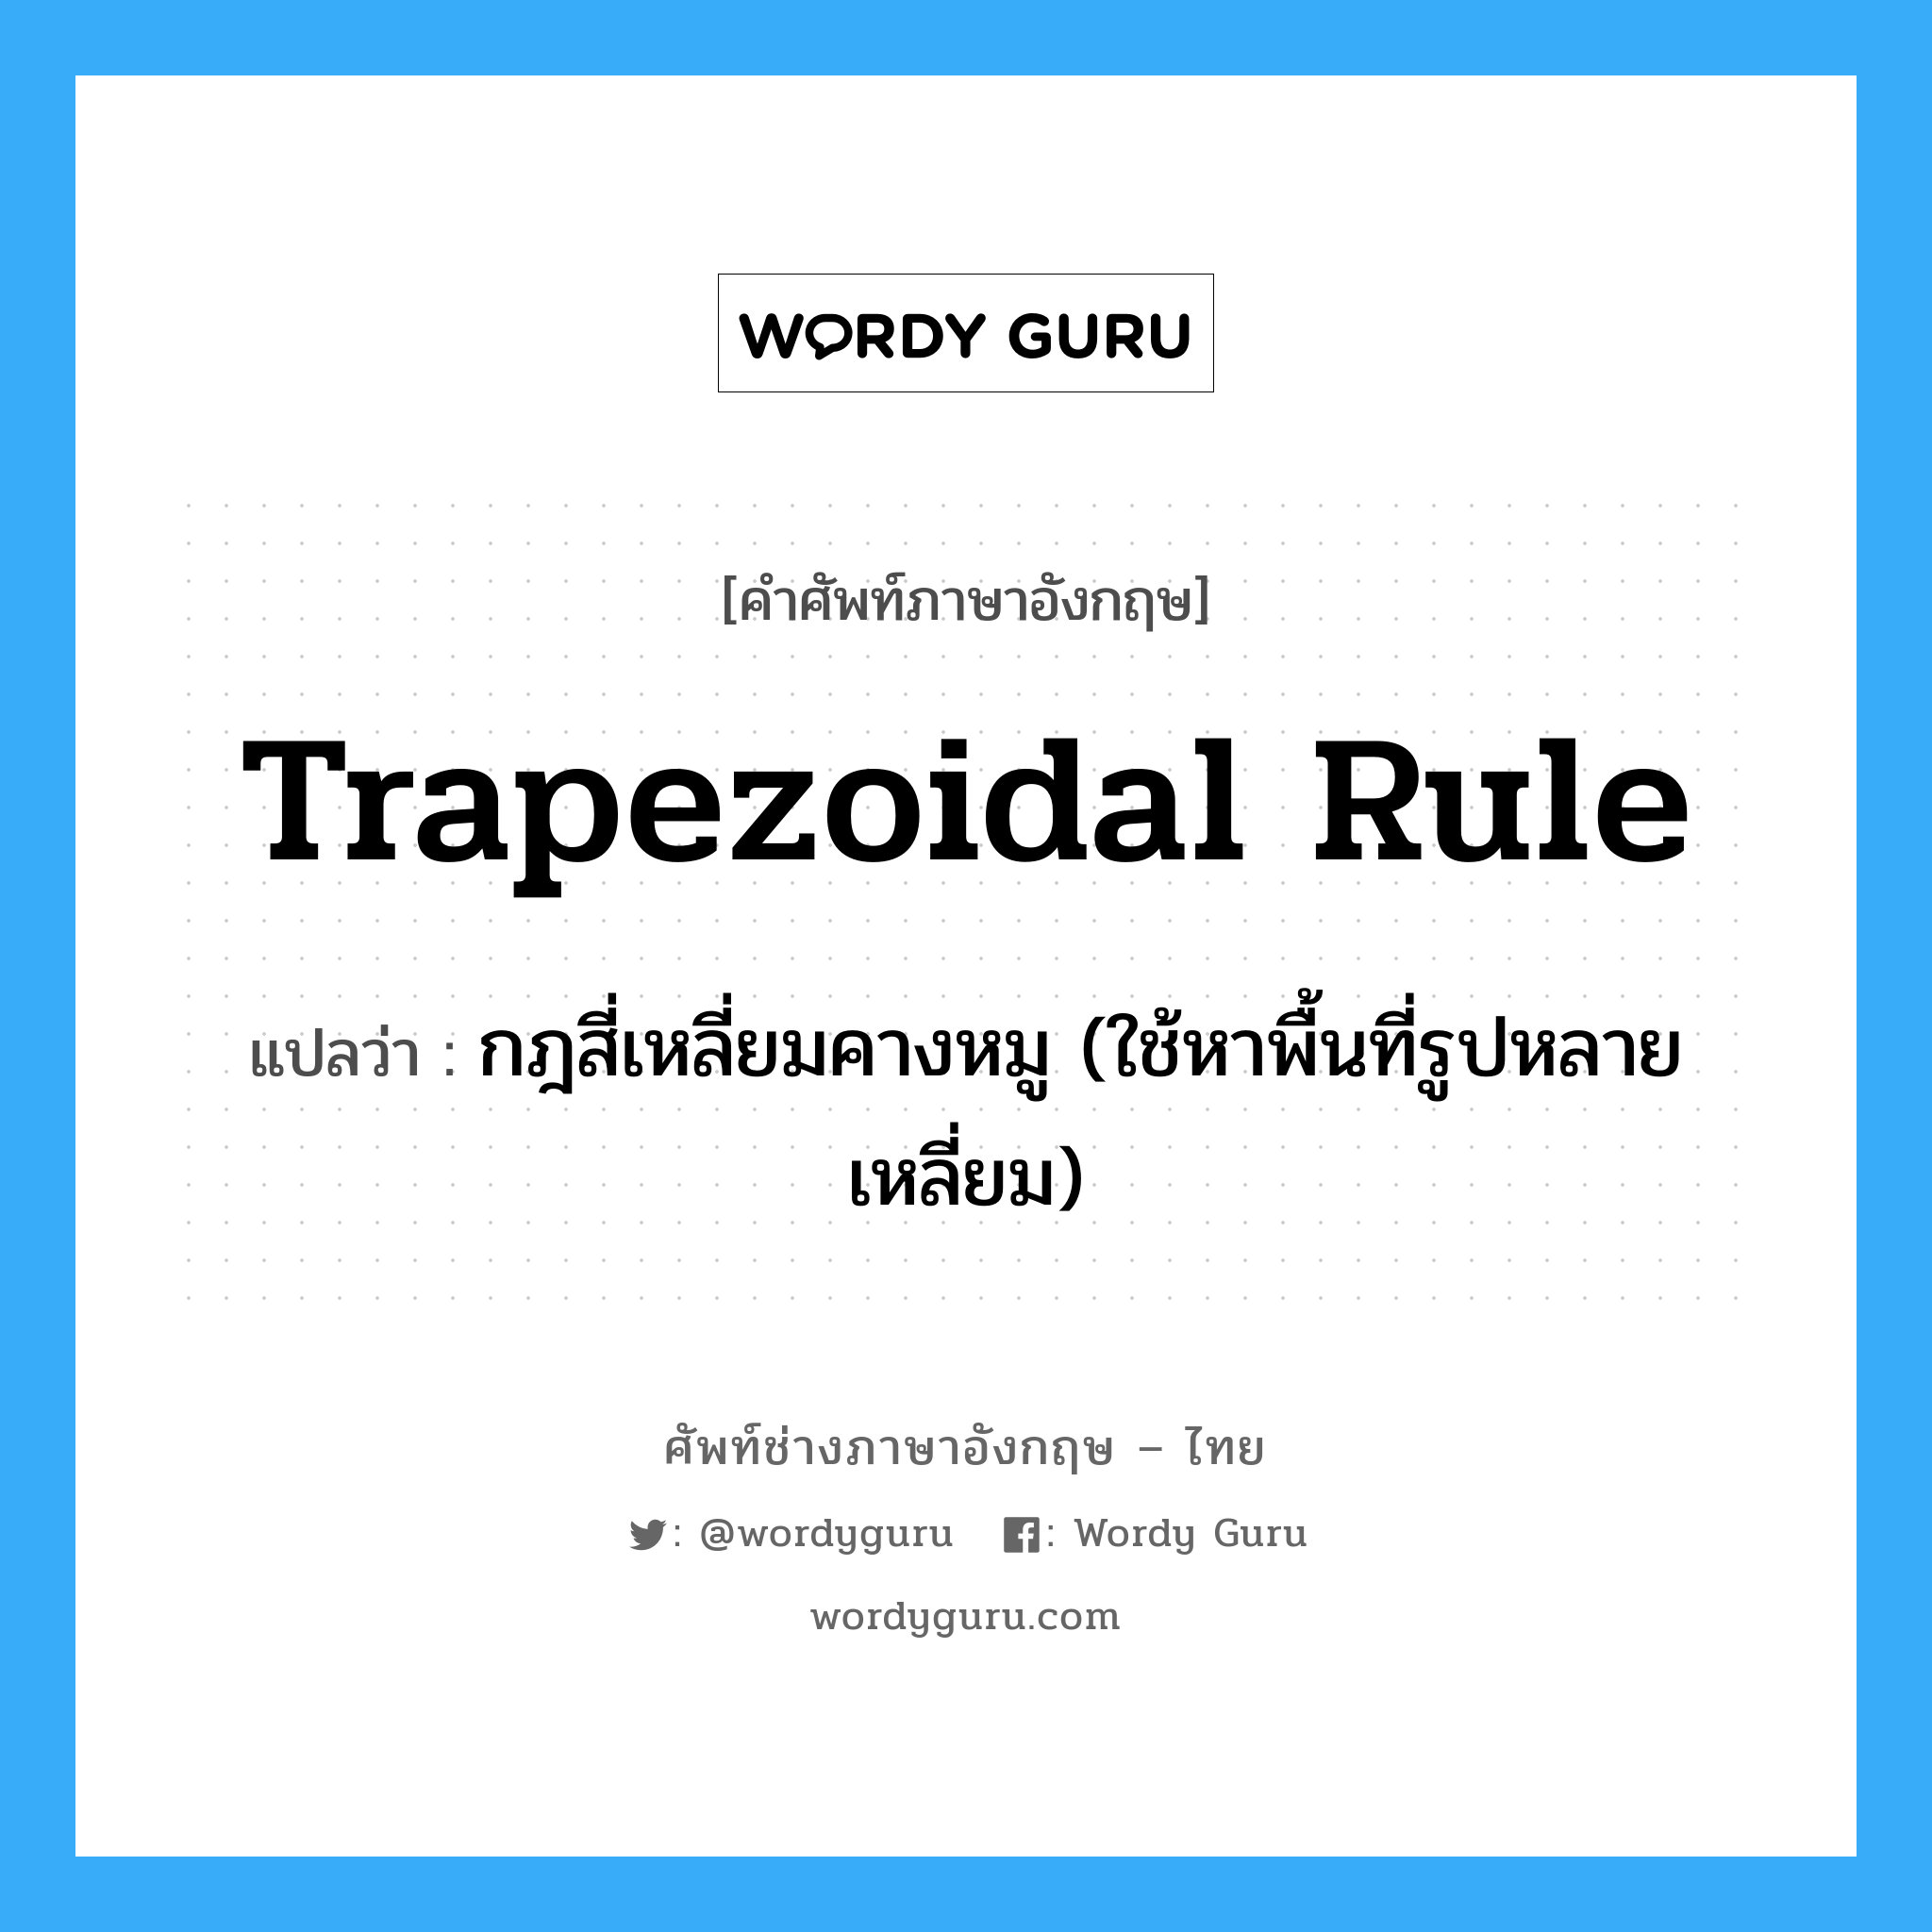 trapezoidal rule แปลว่า?, คำศัพท์ช่างภาษาอังกฤษ - ไทย trapezoidal rule คำศัพท์ภาษาอังกฤษ trapezoidal rule แปลว่า กฎสี่เหลี่ยมคางหมู (ใช้หาพื้นที่รูปหลายเหลี่ยม)